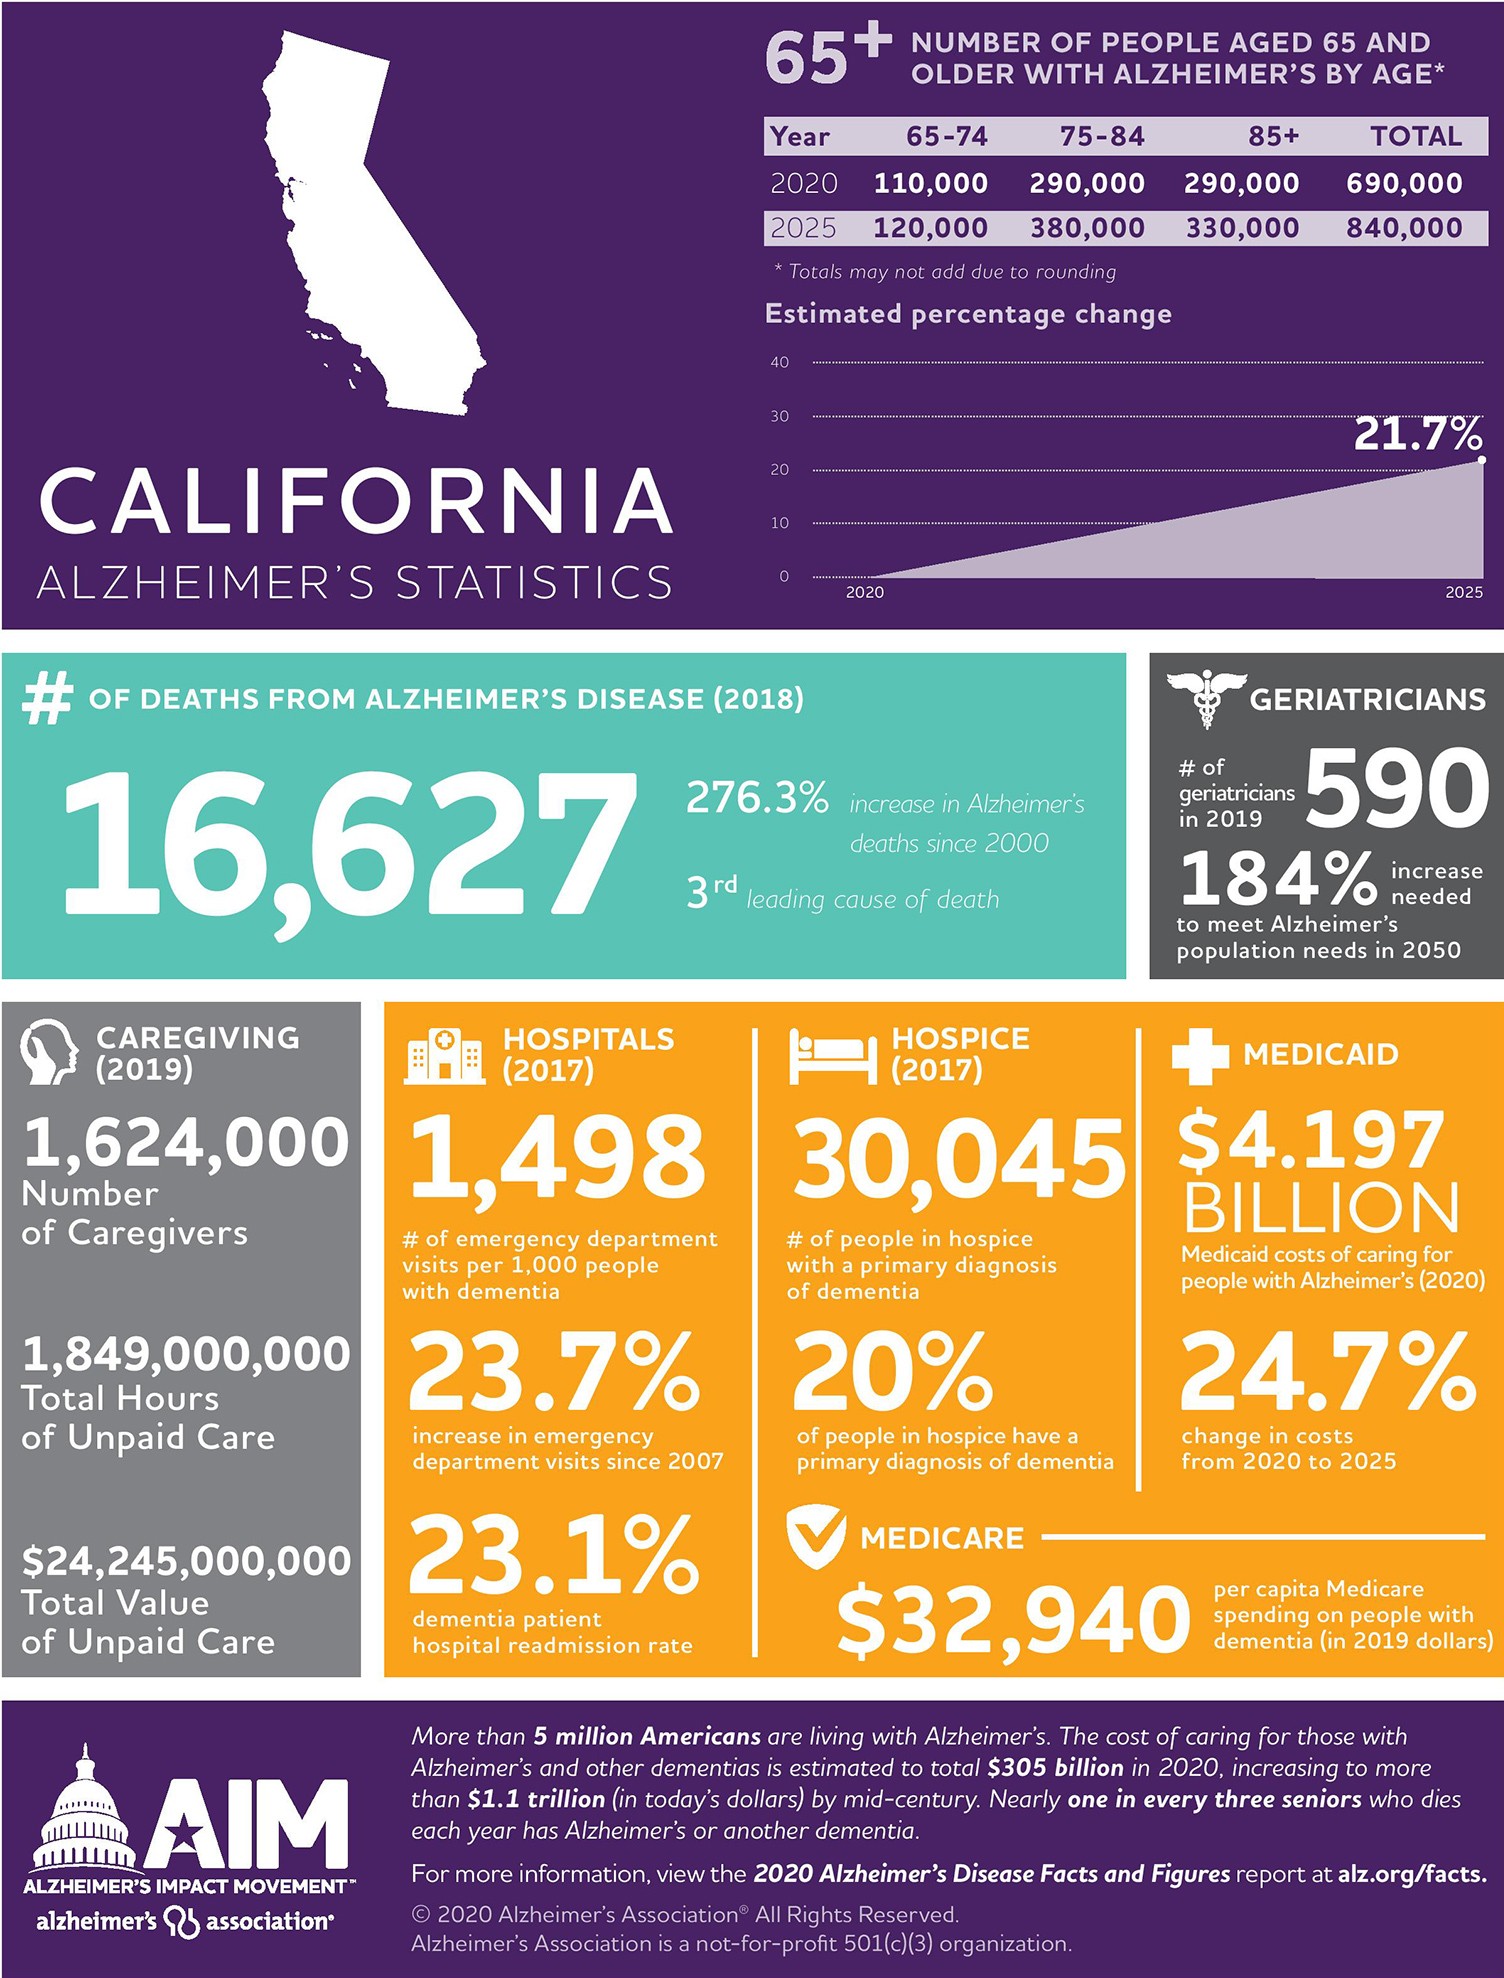 California Alzheimer's Statistics from the Alzheimer's Association®